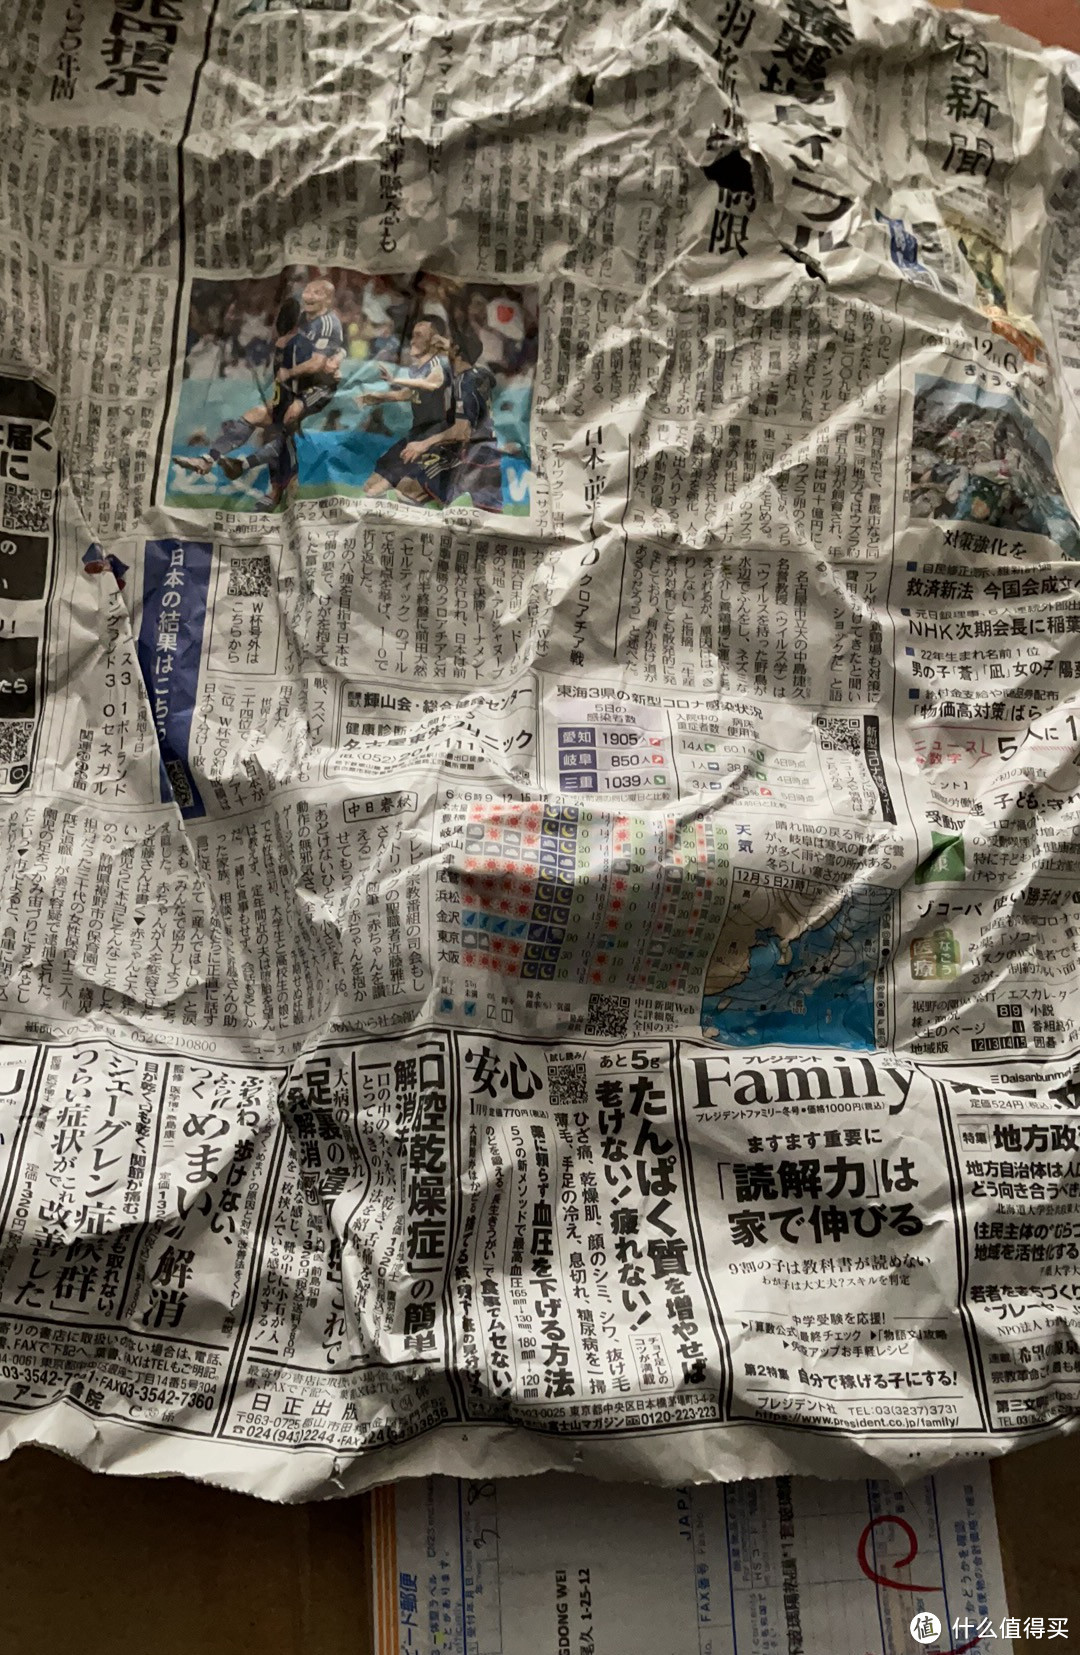 包装桶里塞满了岛国报纸